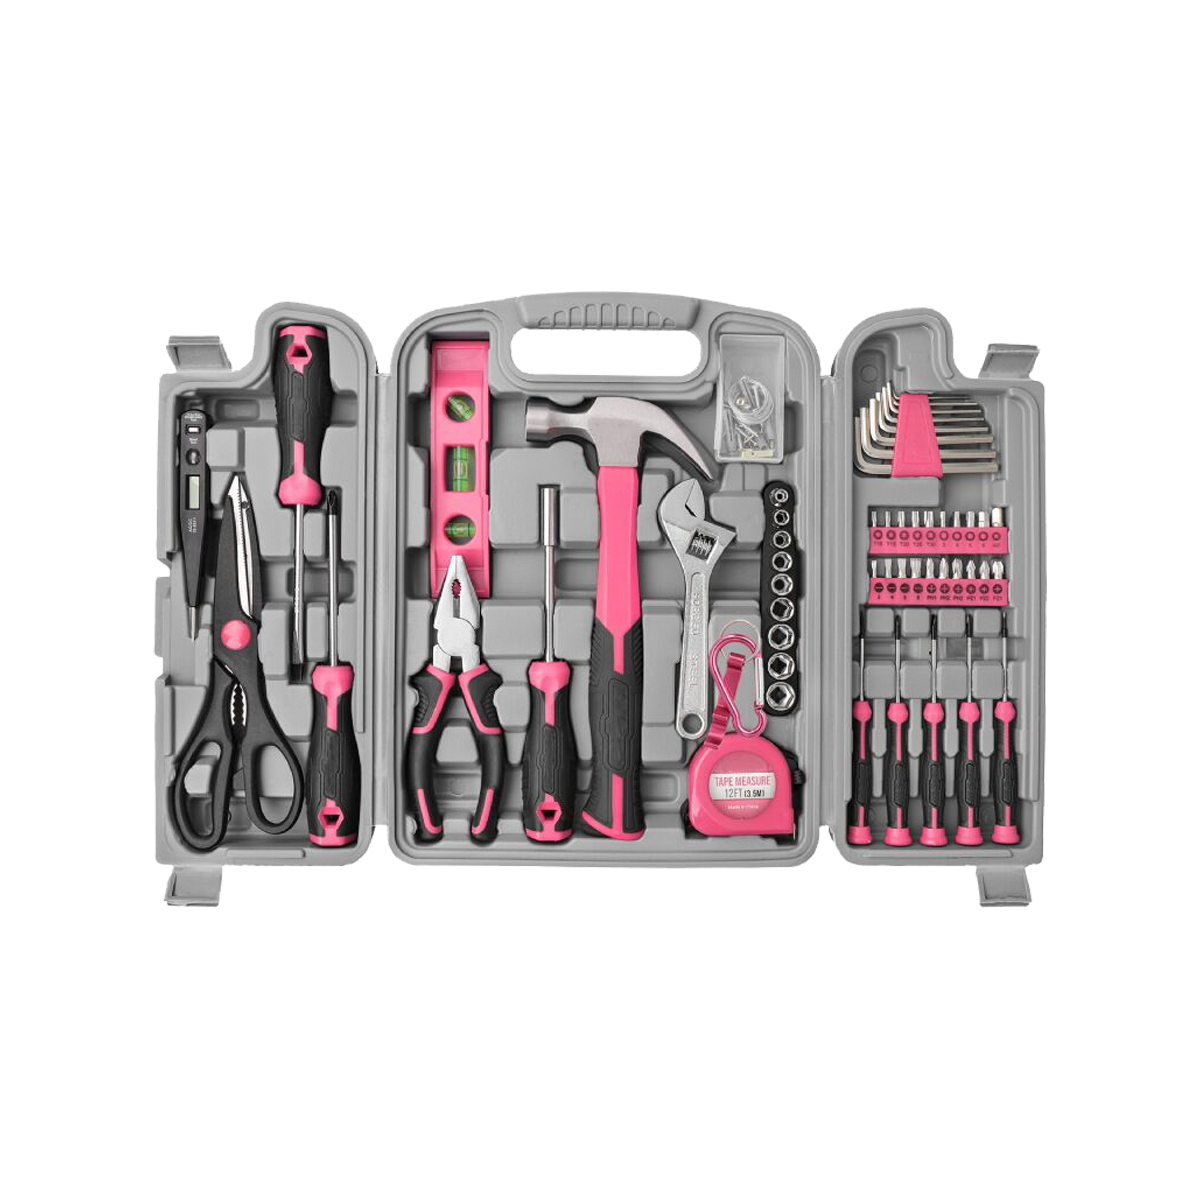 56 peças kit de ferramentas domésticas rosa básico caixa de ferramentas manuais reparos conjunto de ferramentas completo para mulheres